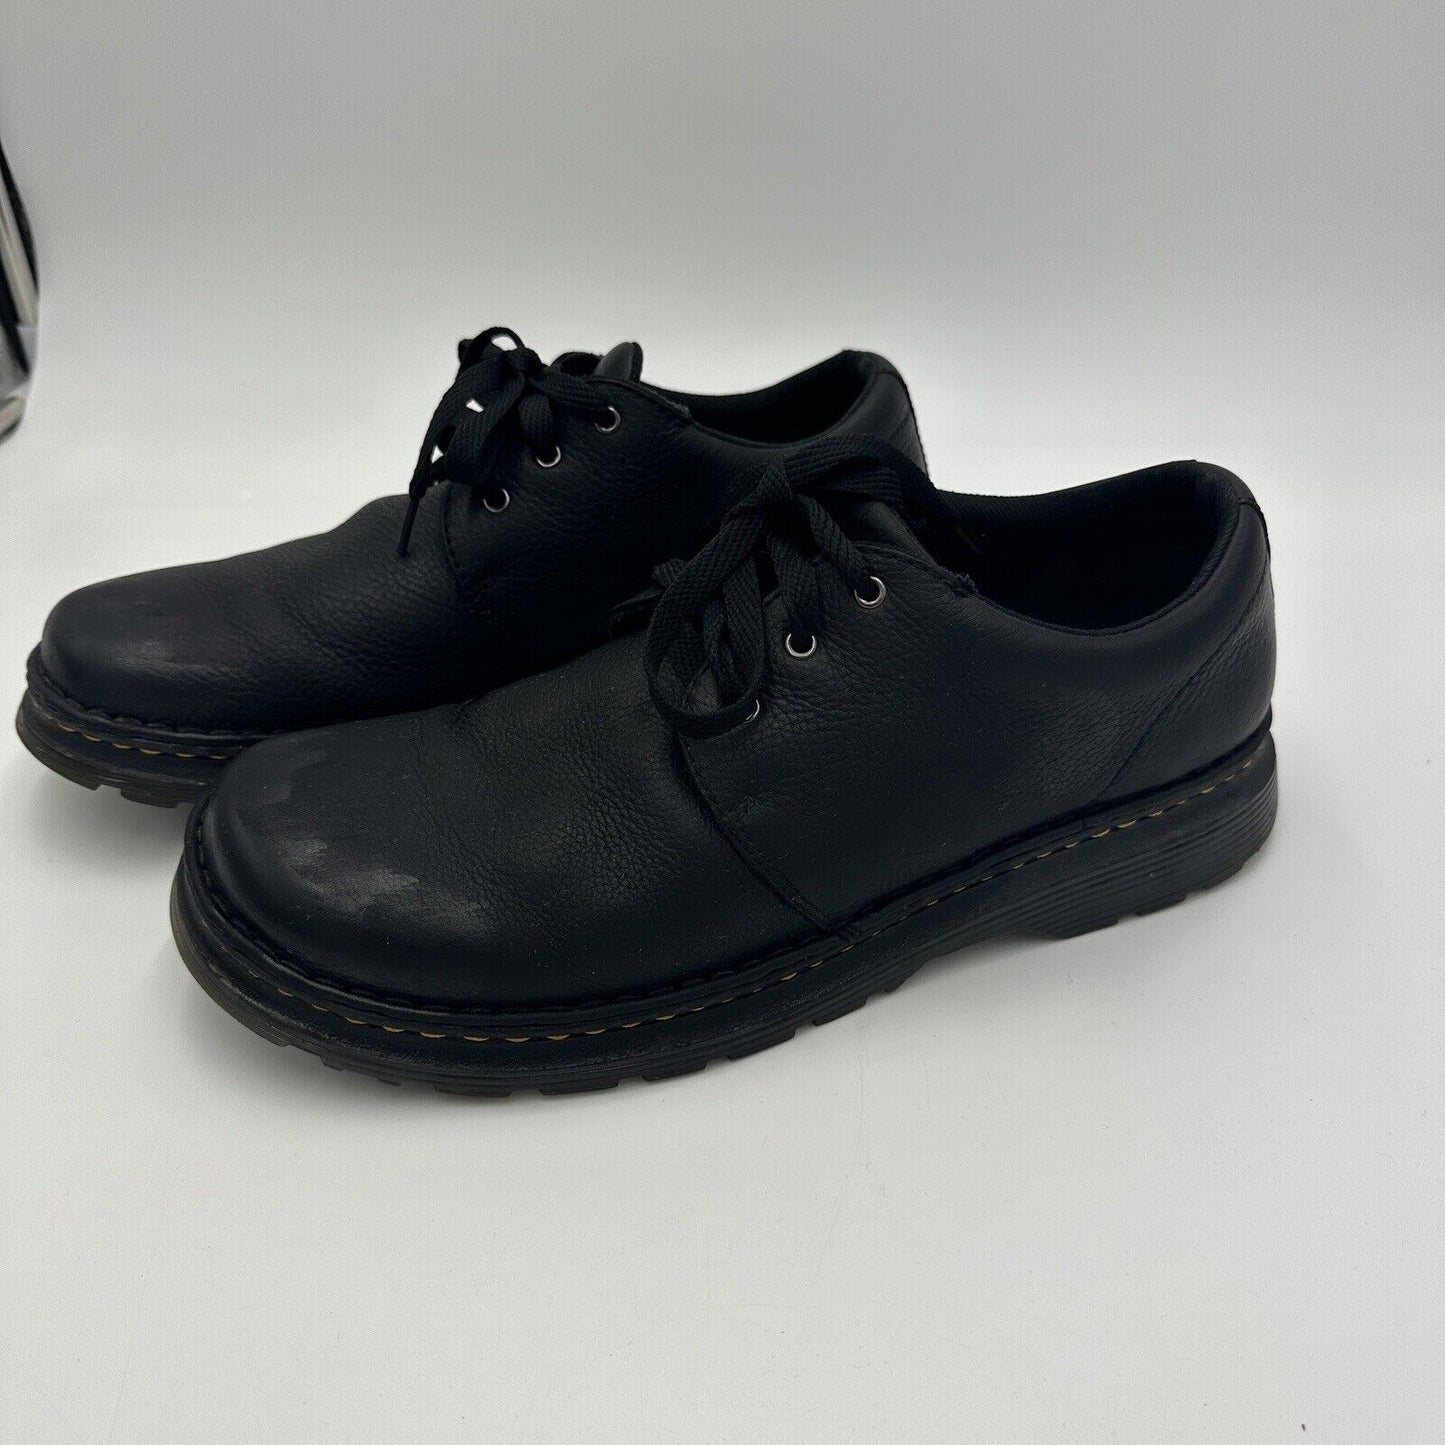 Dr. Martens Hazeldon Grizzly Black Men's Leather Shoes Size 12 US 46 EU